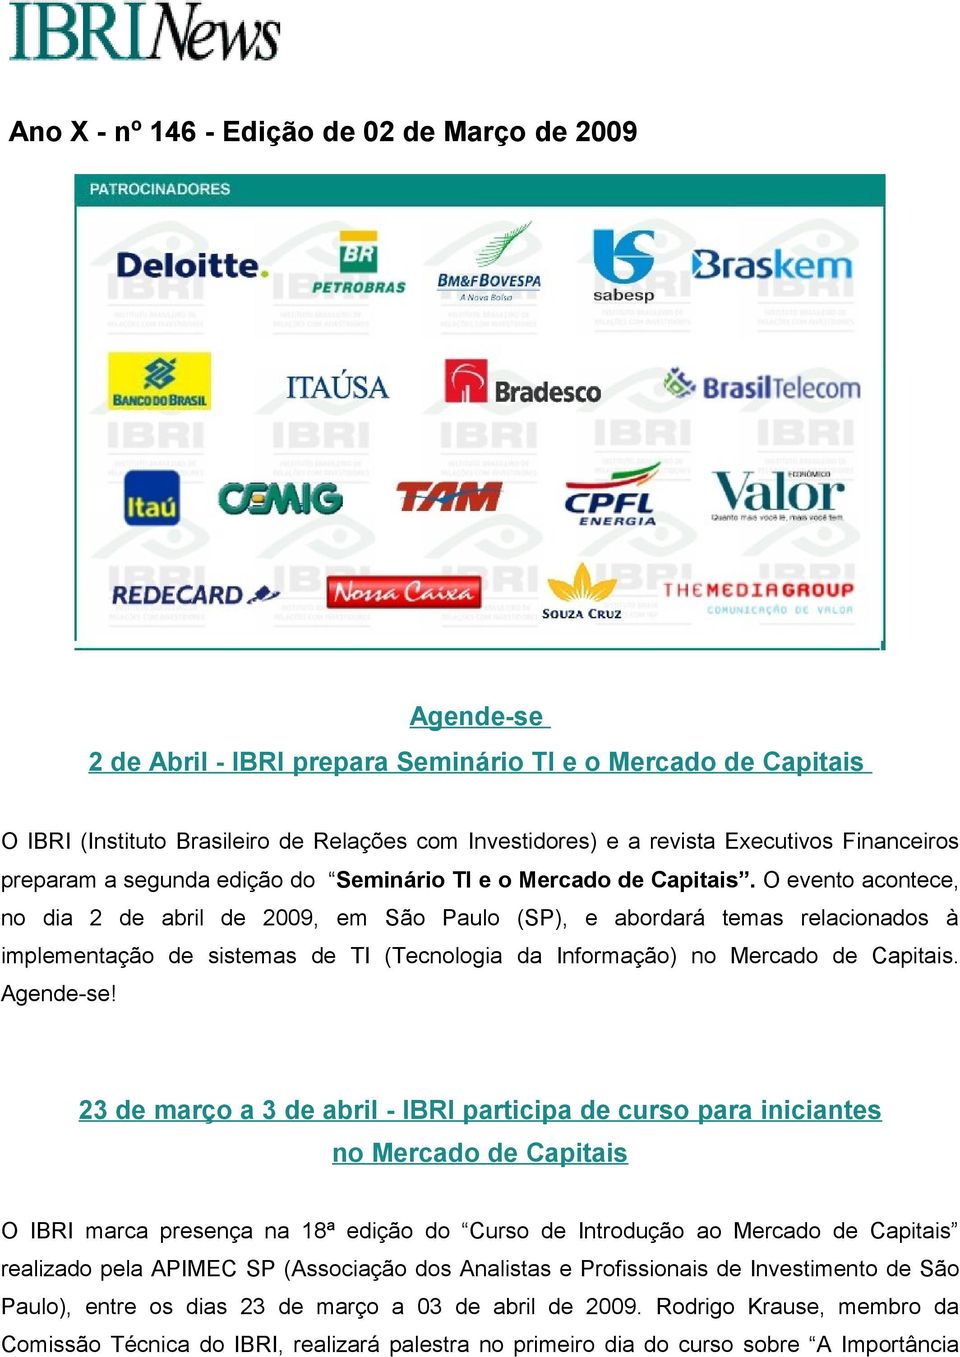 O evento acontece, no dia 2 de abril de 2009, em São Paulo (SP), e abordará temas relacionados à implementação de sistemas de TI (Tecnologia da Informação) no Mercado de Capitais. Agende-se!